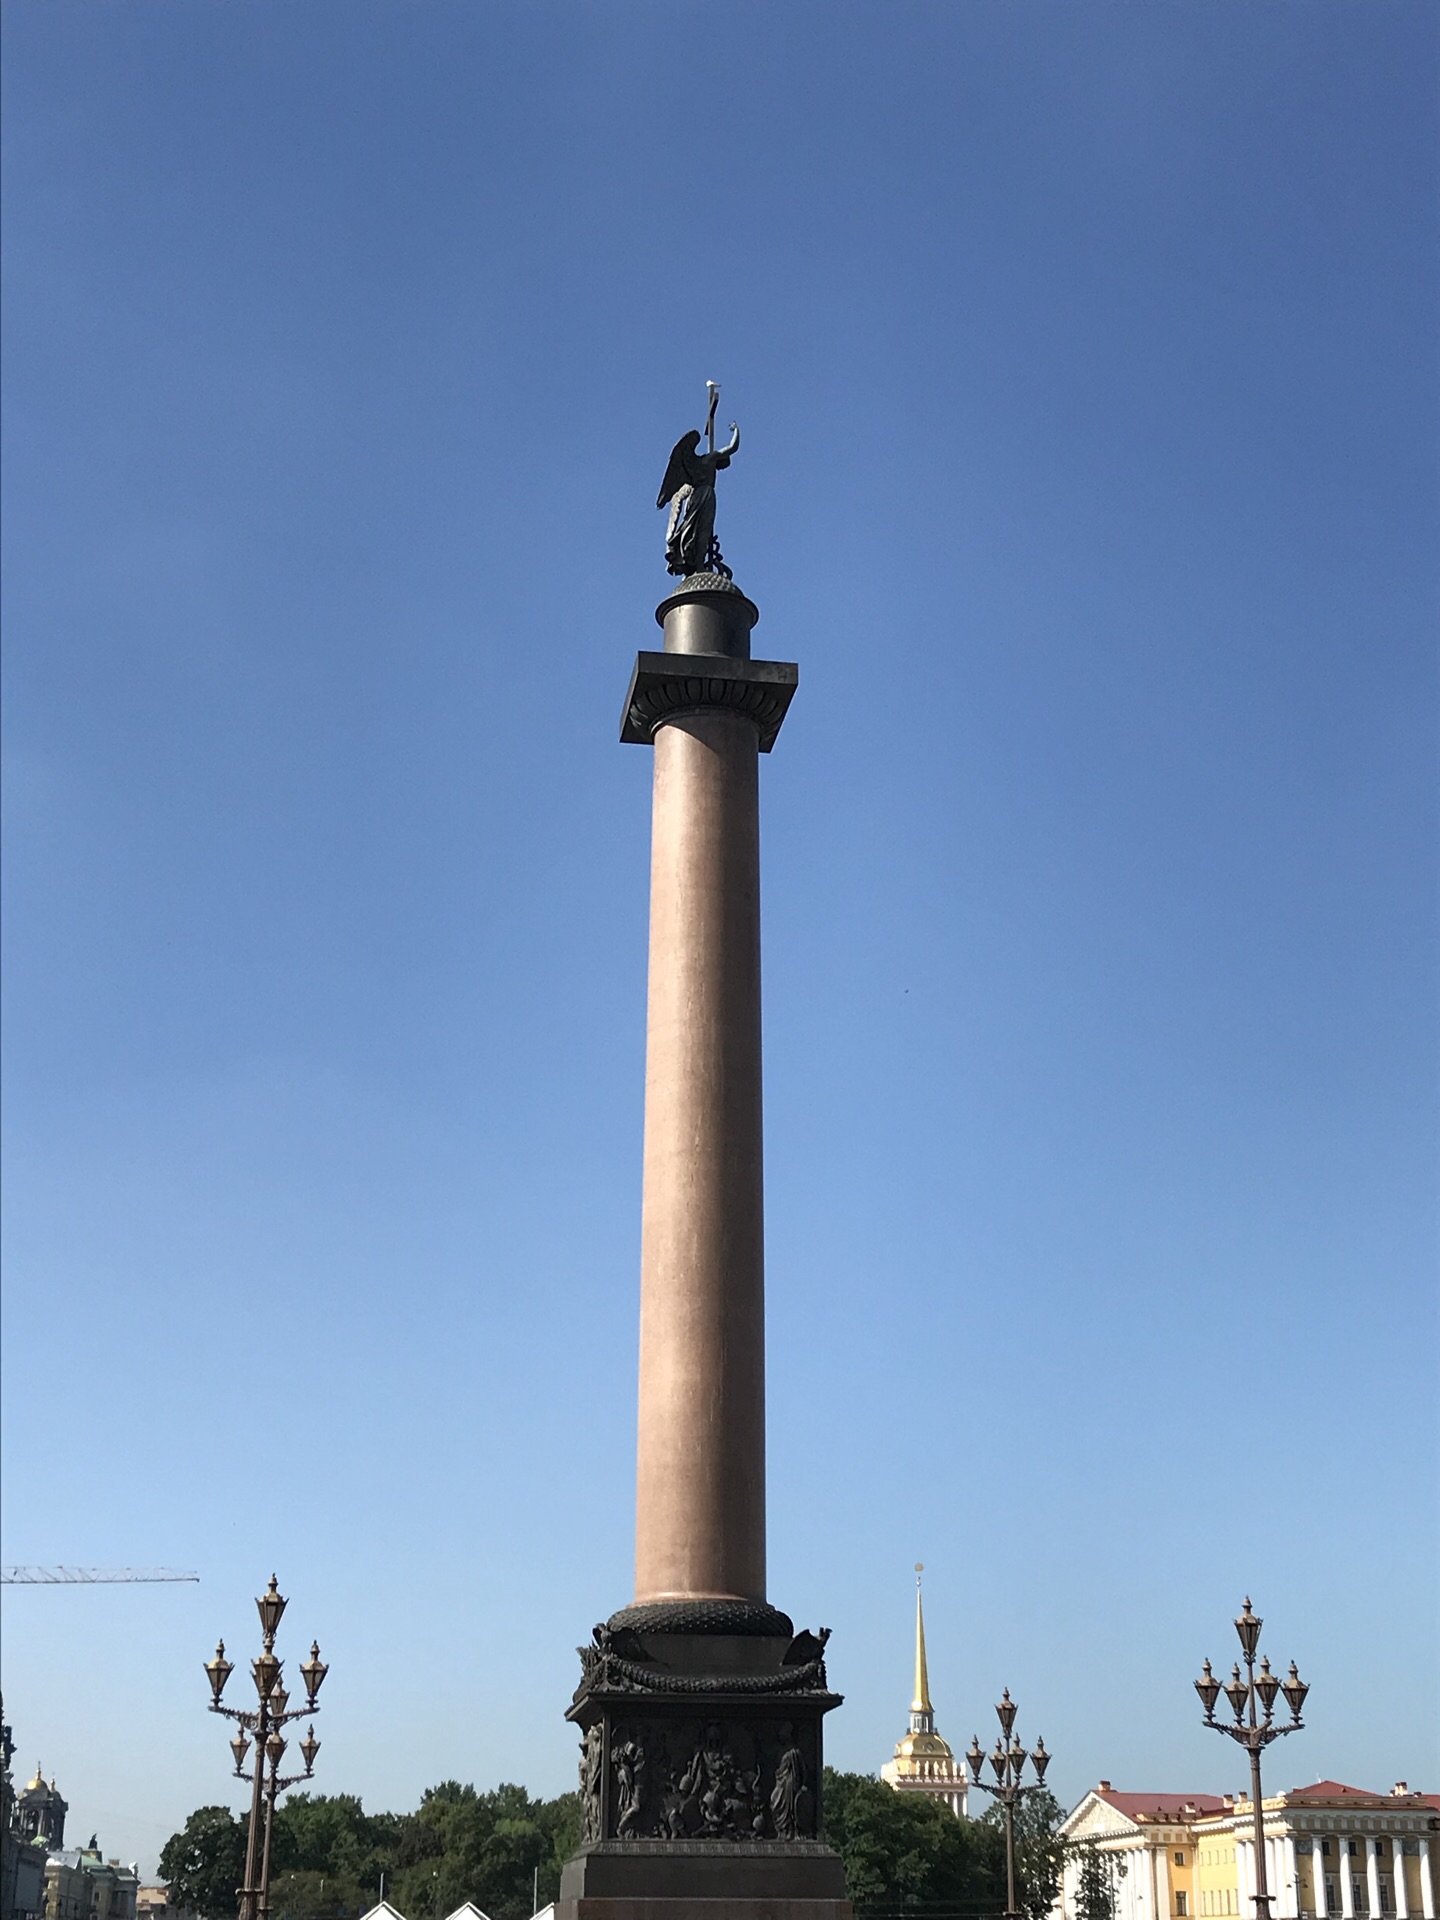 【携程攻略】亚历山大纪念柱门票,圣彼得堡亚历山大纪念柱攻略/地址/图片/门票价格